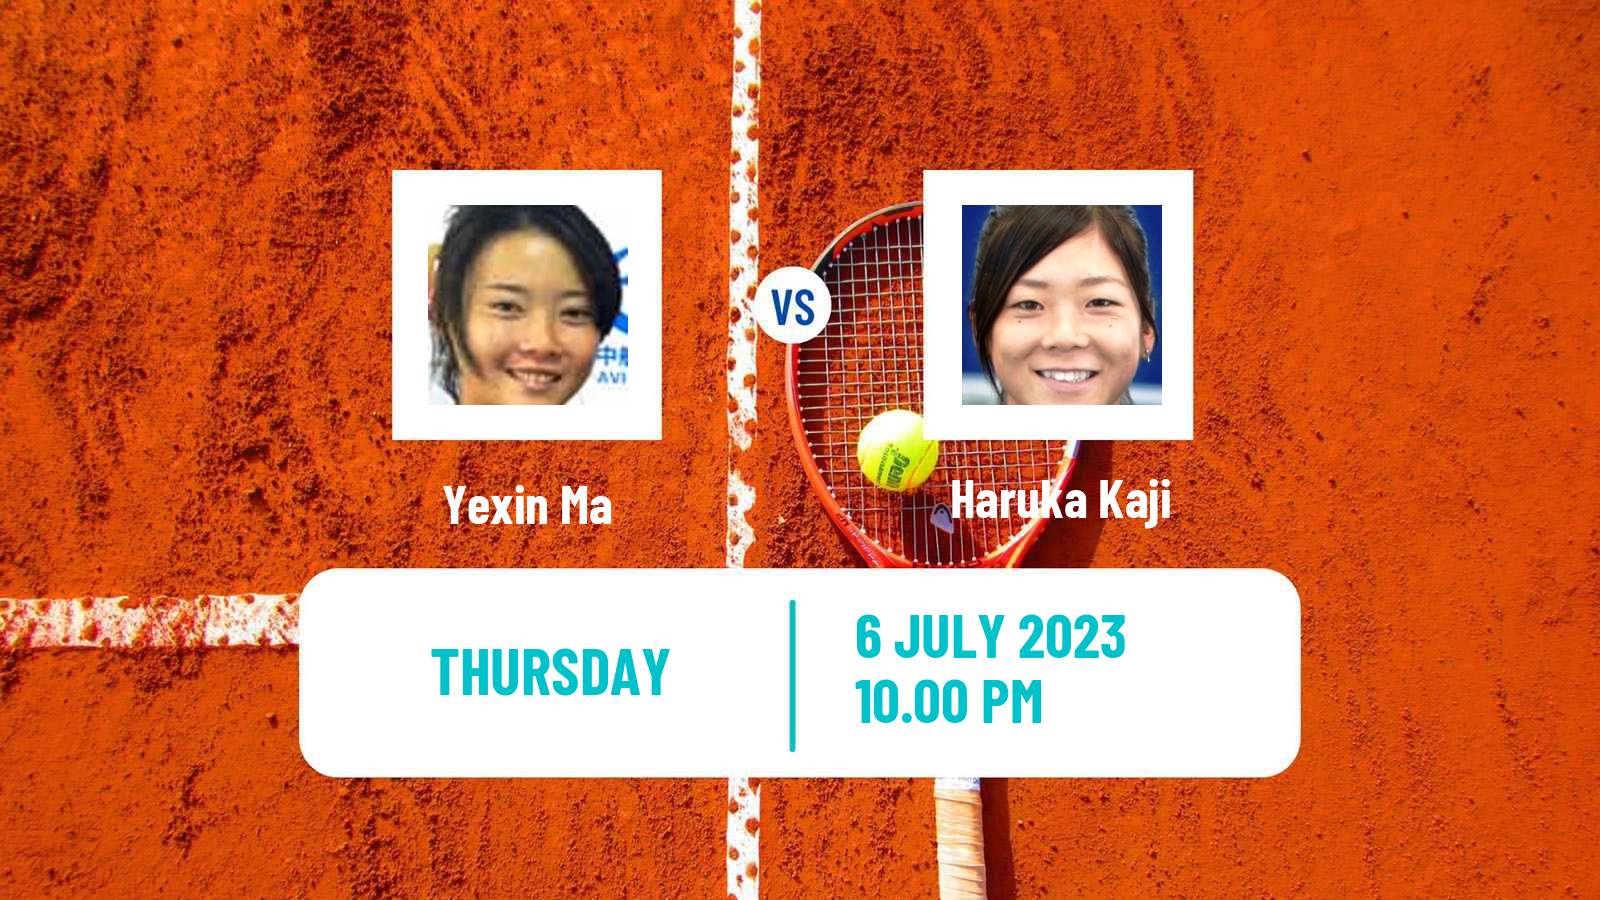 Tennis ITF W40 Hong Kong Women Yexin Ma - Haruka Kaji